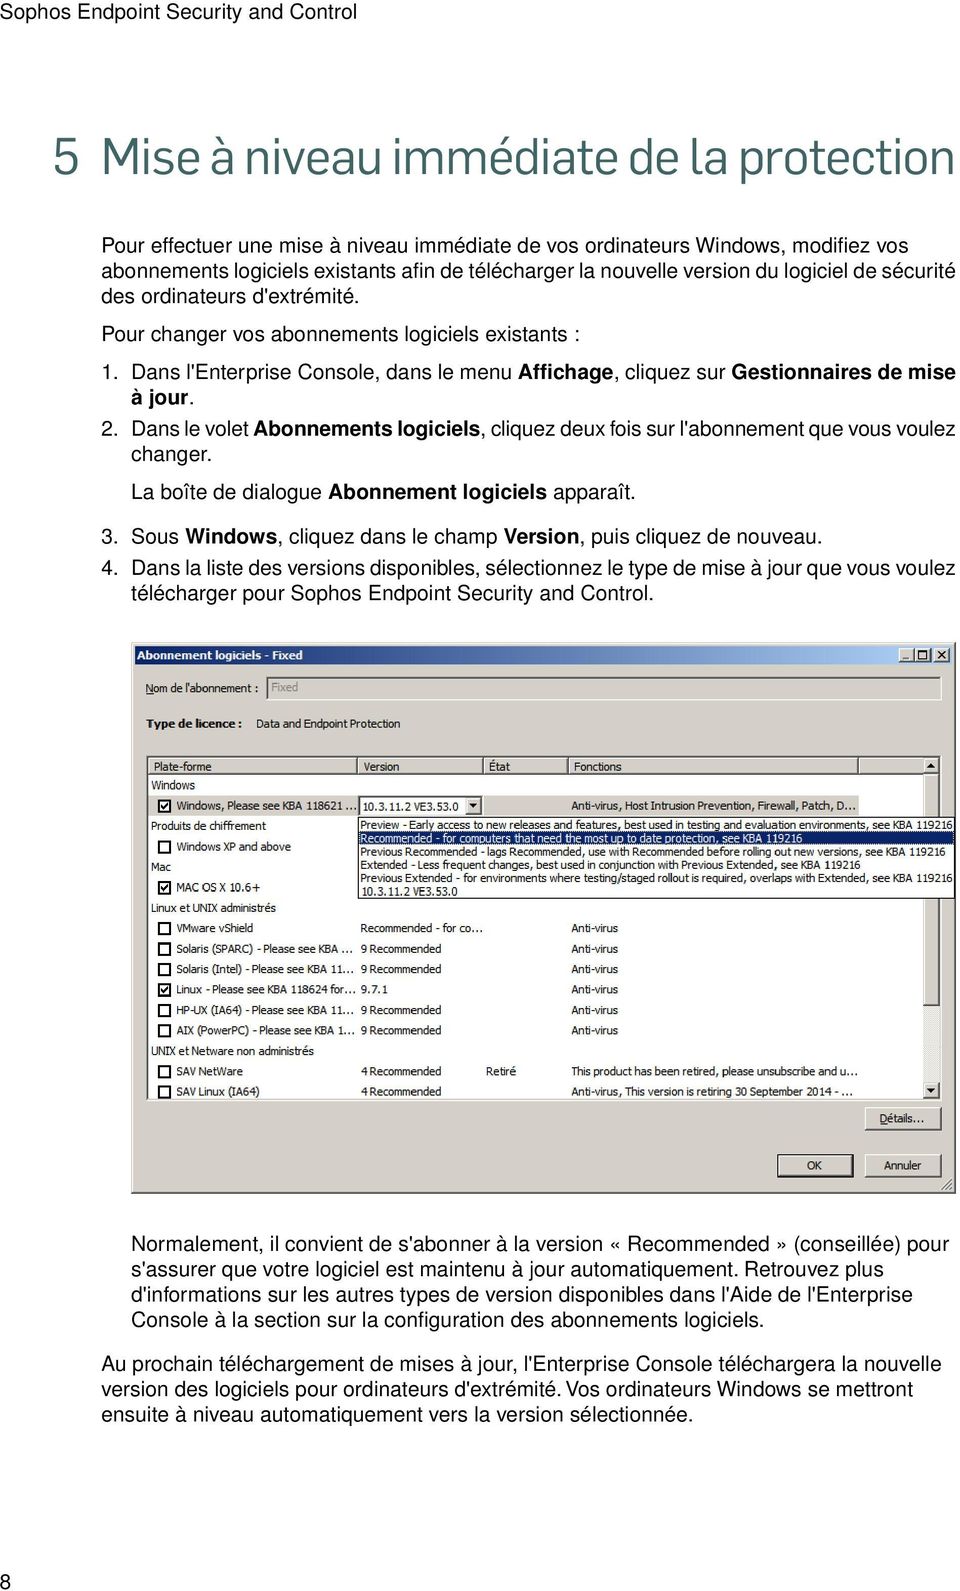 Dans l'enterprise Console, dans le menu Affichage, cliquez sur Gestionnaires de mise à jour. 2. Dans le volet Abonnements logiciels, cliquez deux fois sur l'abonnement que vous voulez changer.